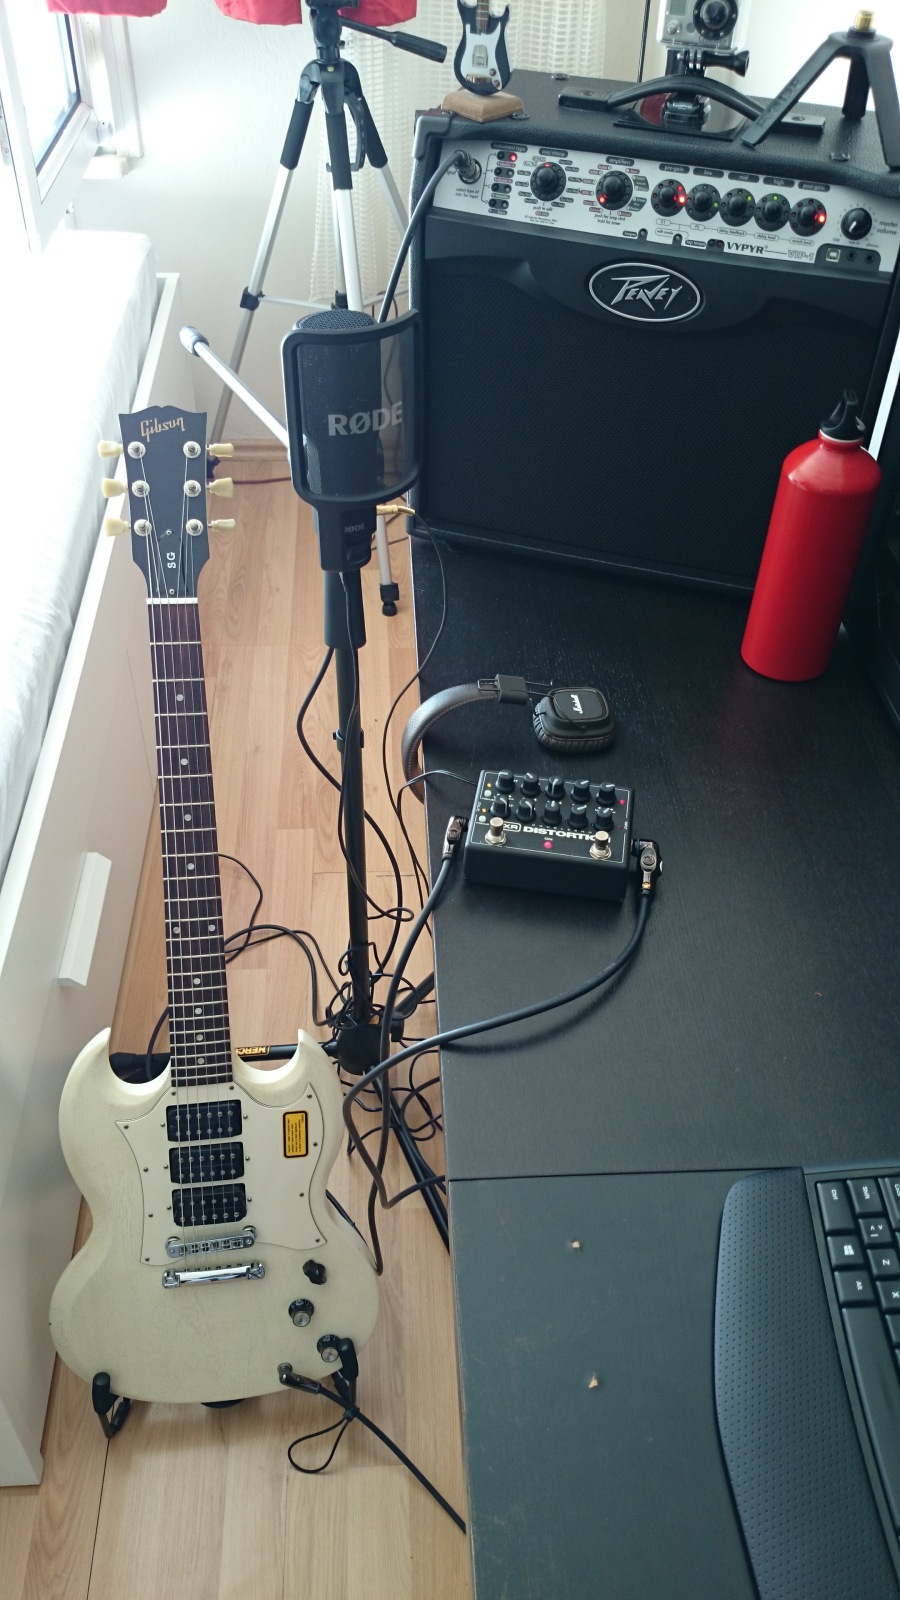  Satılık - PEAVEY VYPYR VIP1 20W USB'li (Türkiye'de yok) Elektrik,Bass,Akustik combo gitar amfisi